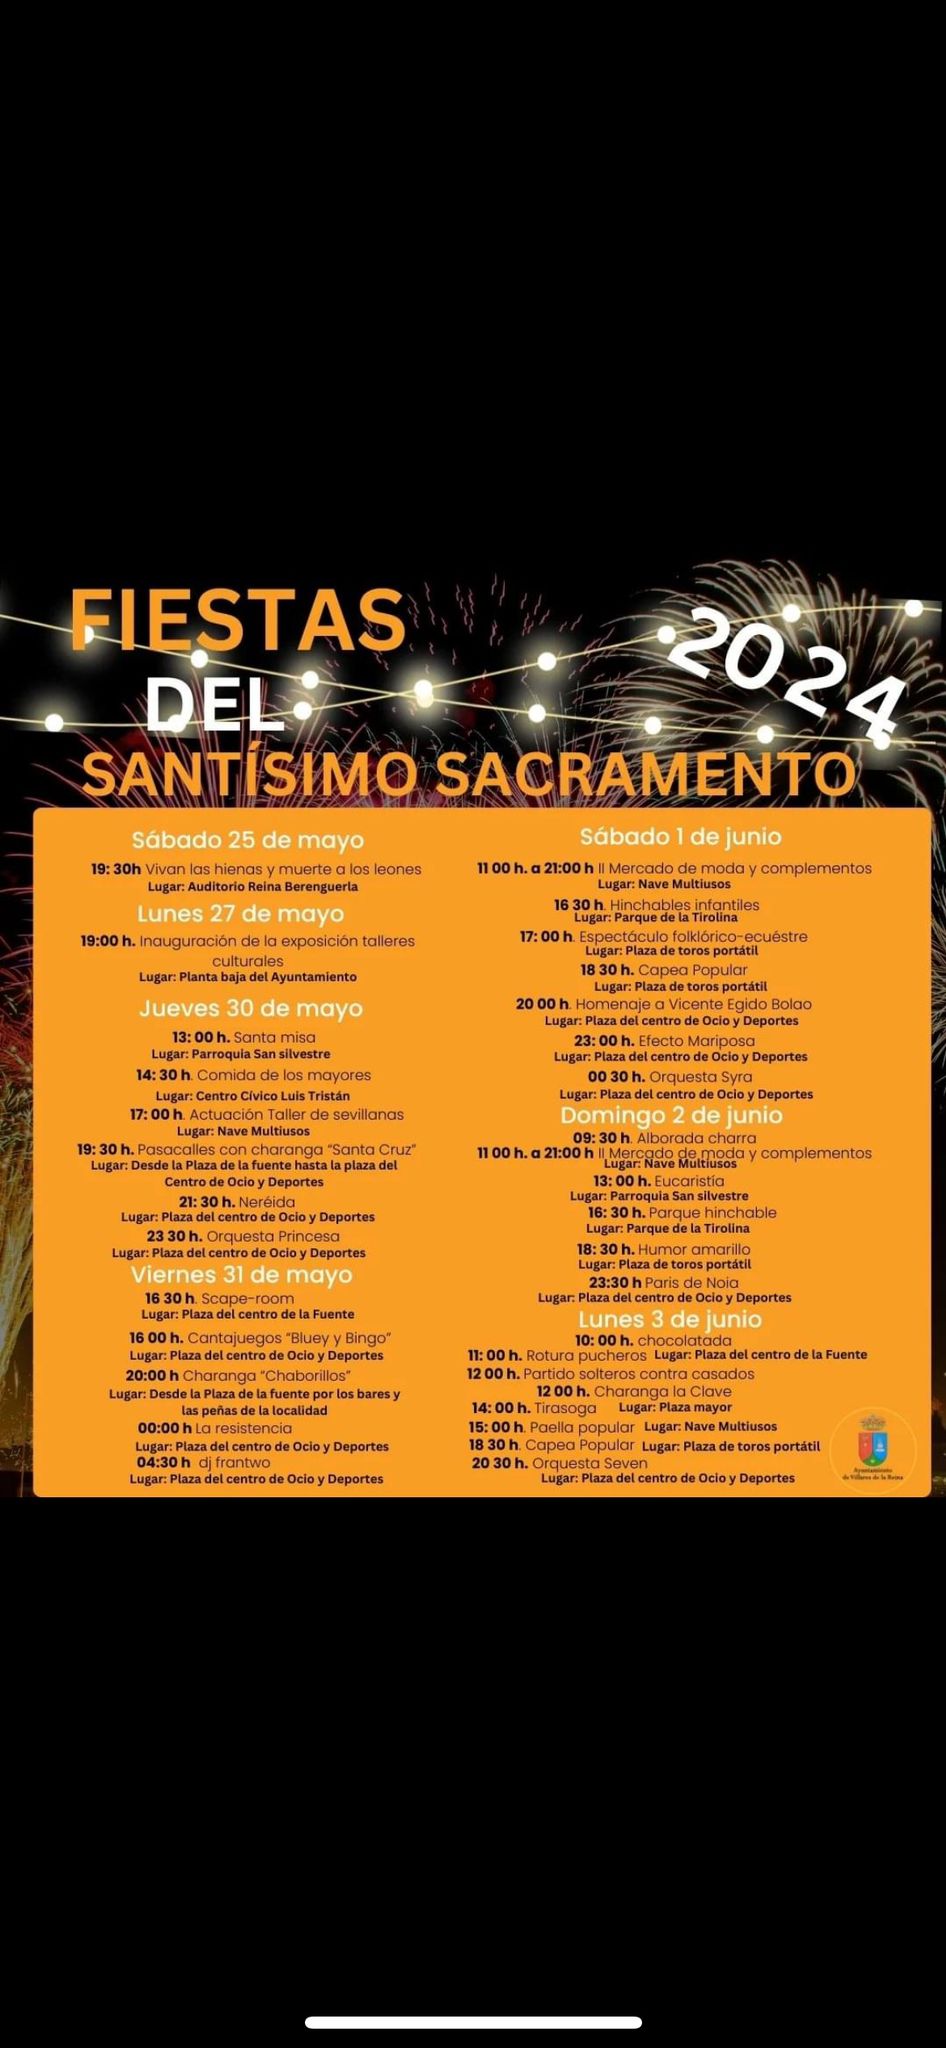 Programación de las Fiestas del Santísimo Sacramento de Villares de la Reina, Salamanca